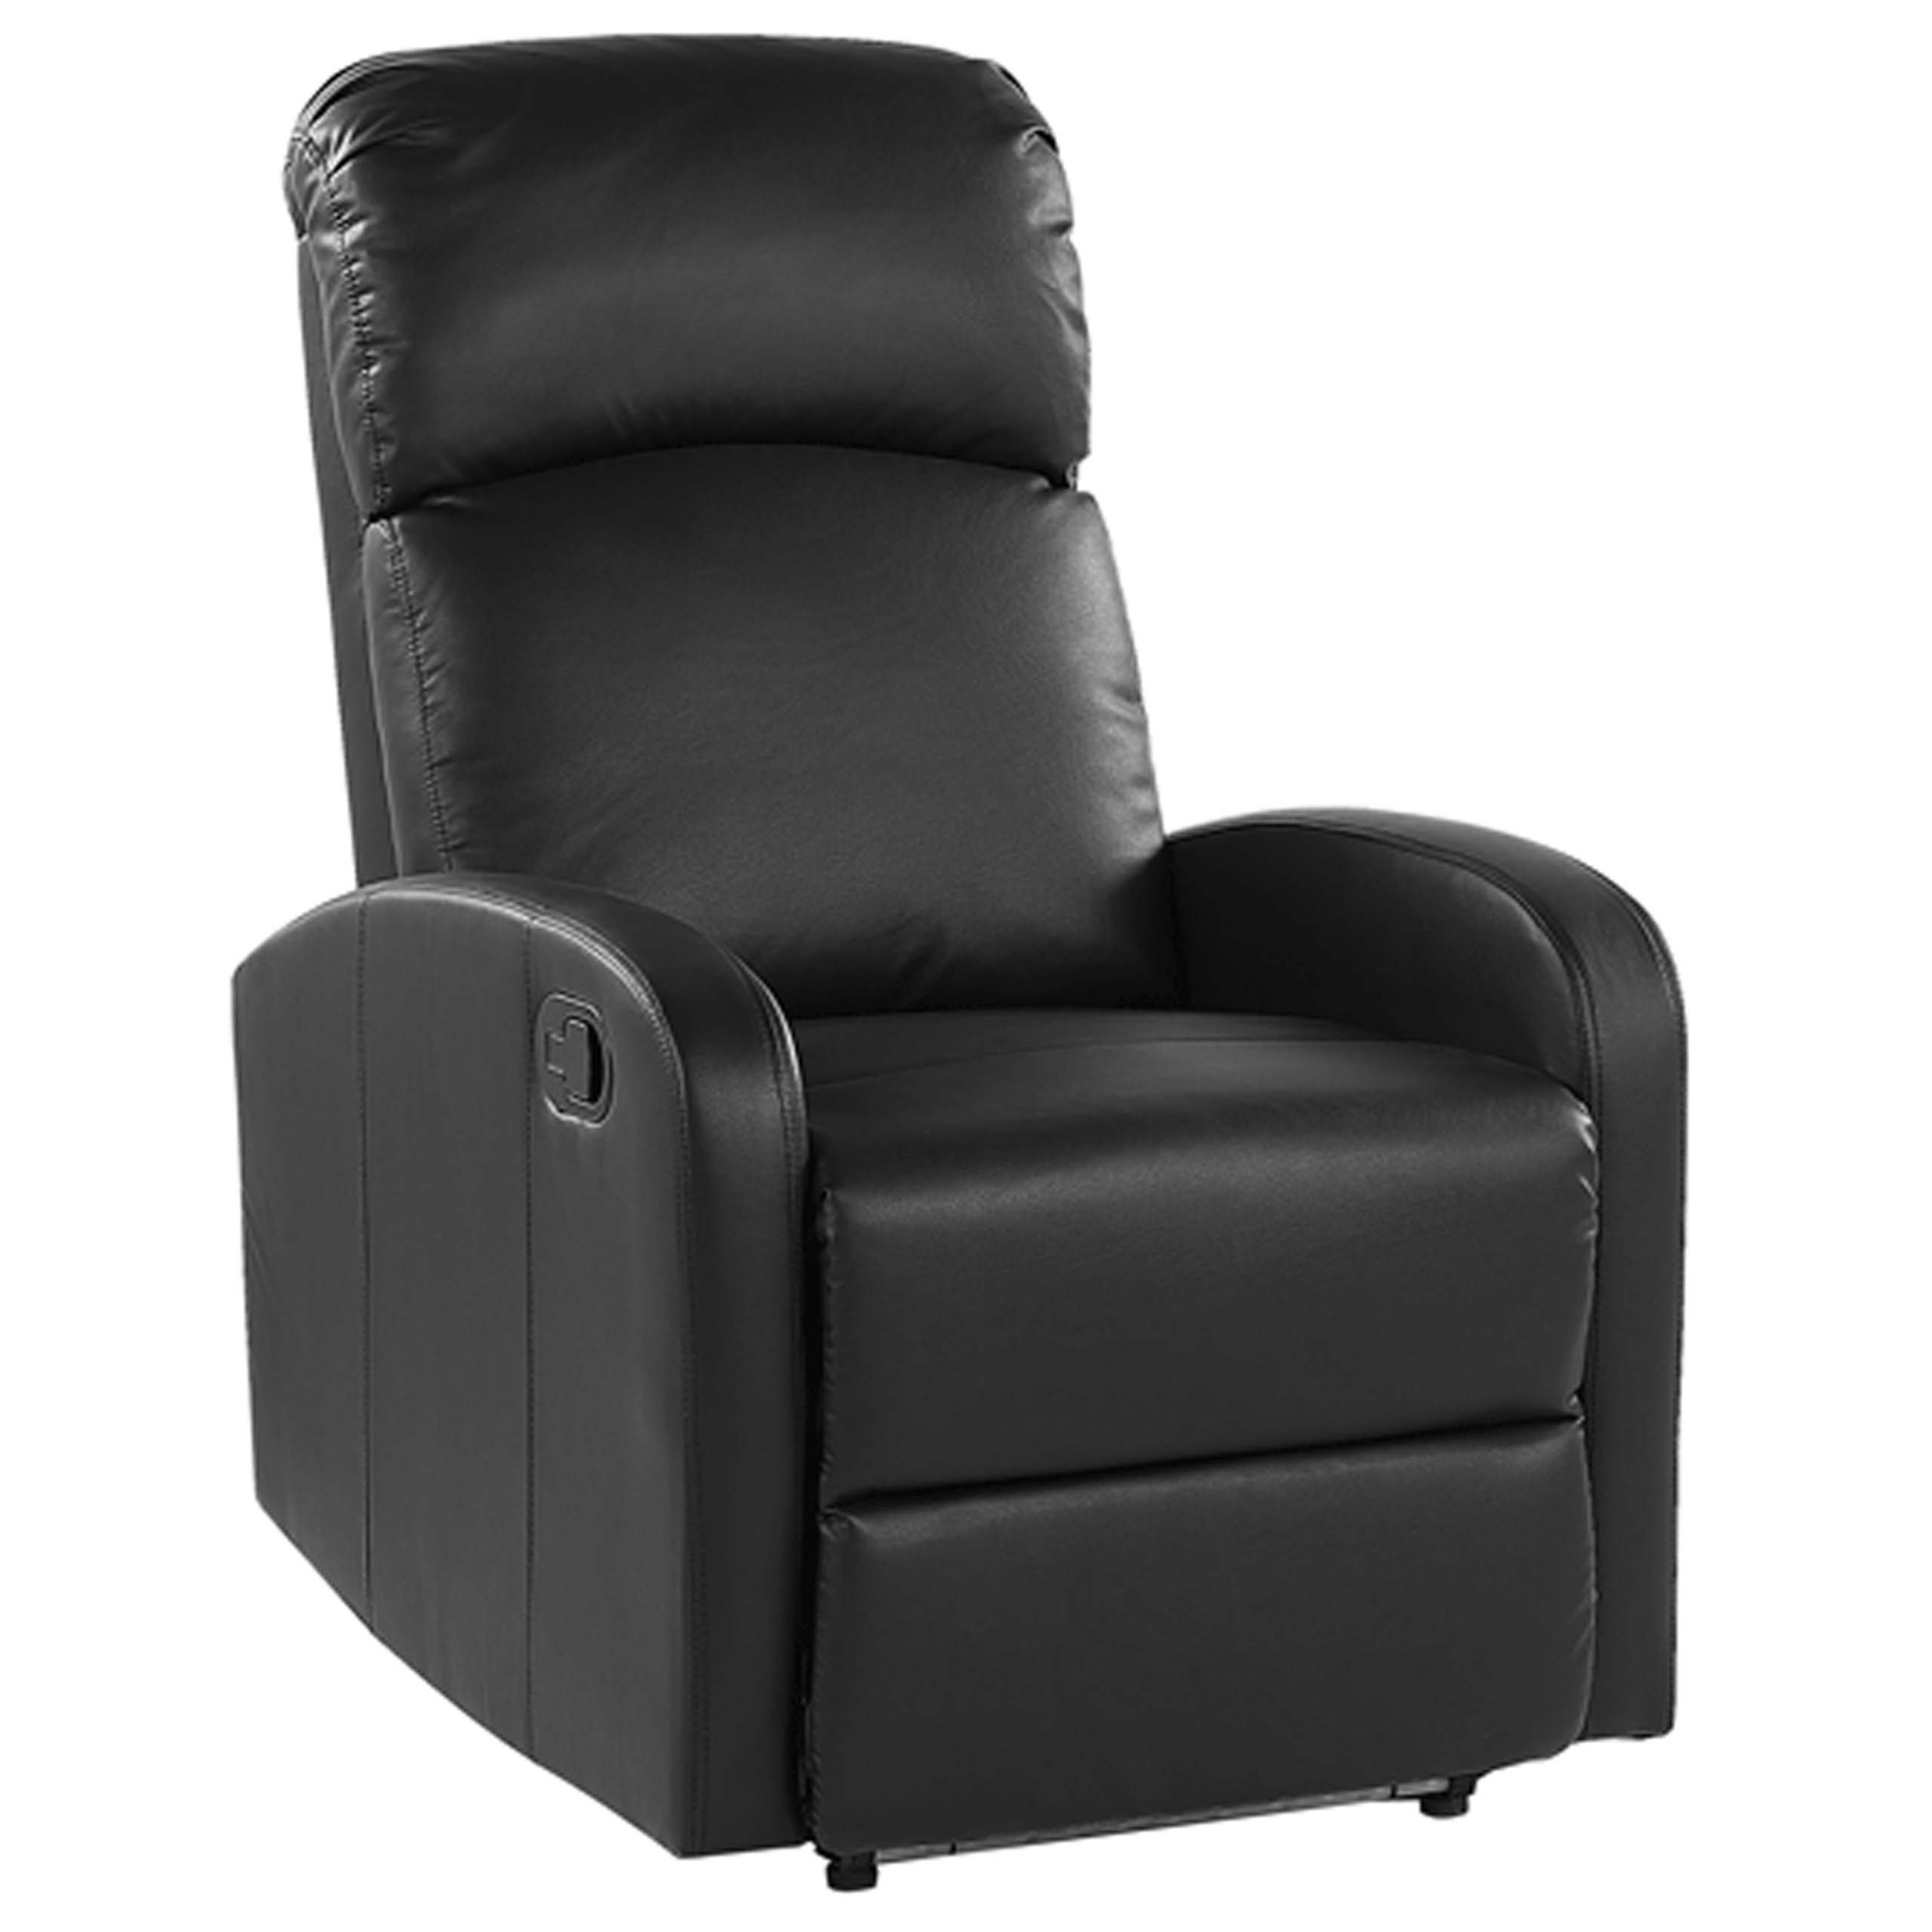 Beliani Cadeira reclinável estofada em pele sintética preta com luz LED azul, porta USB, poltrona de design moderno